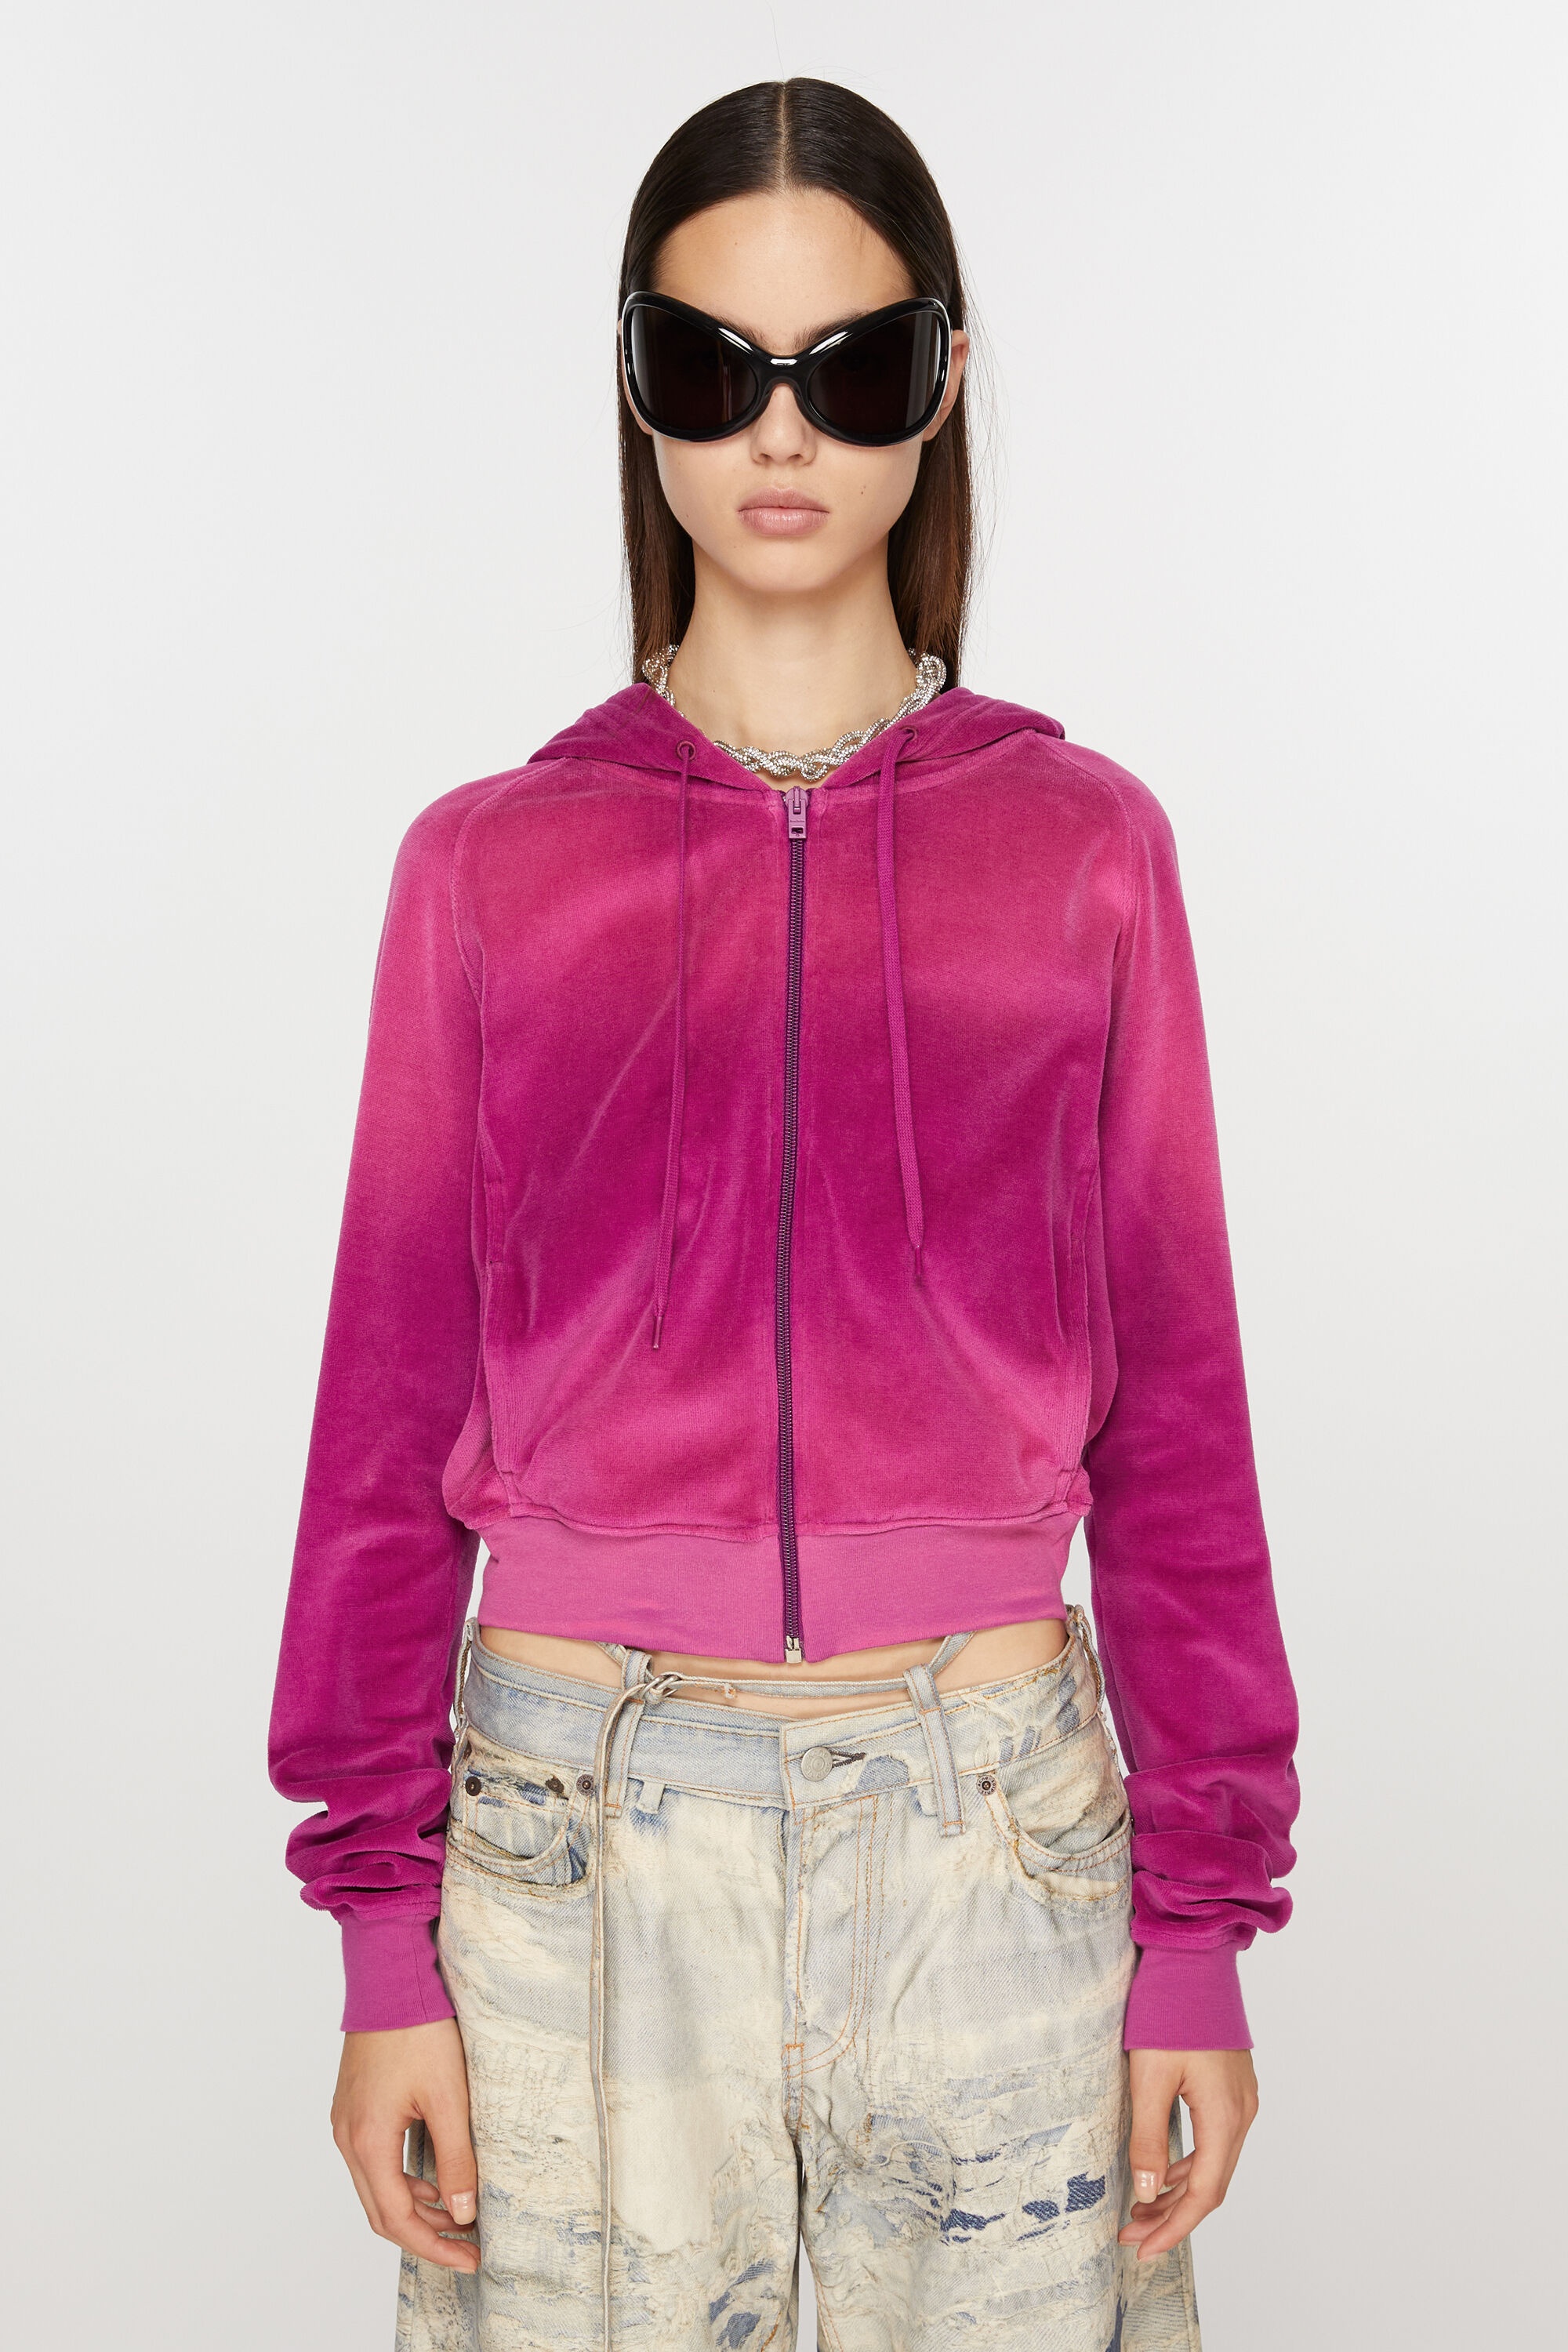 Hooded zip sweater velvet - Magenta pink - 2